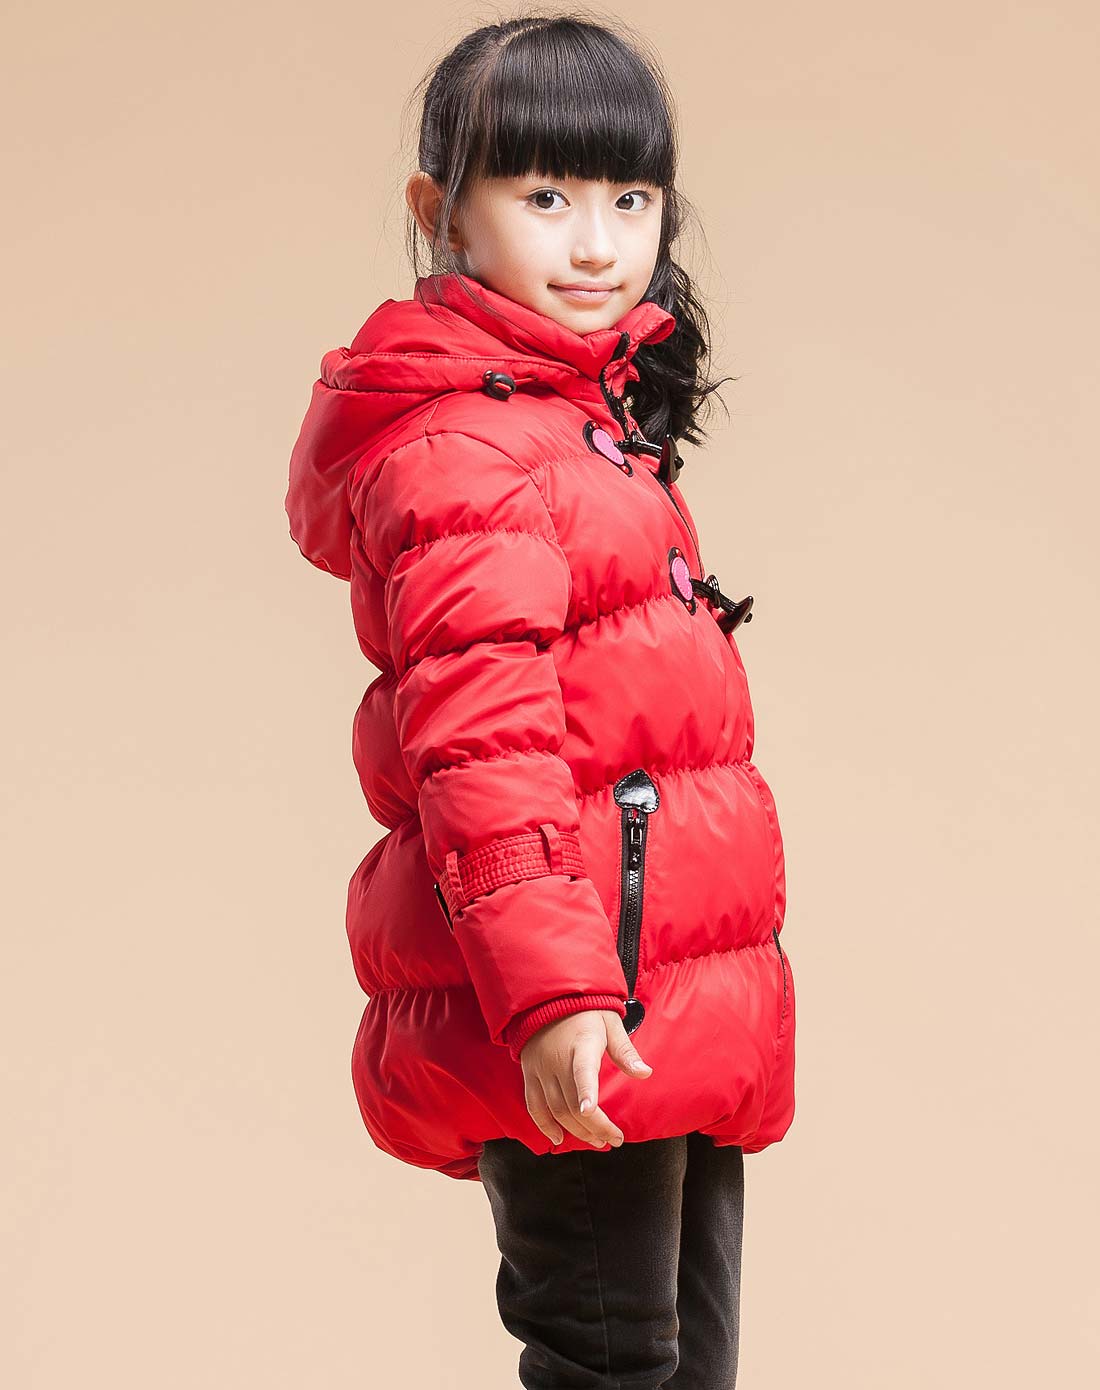 穿红棉袄的小女孩广告图片